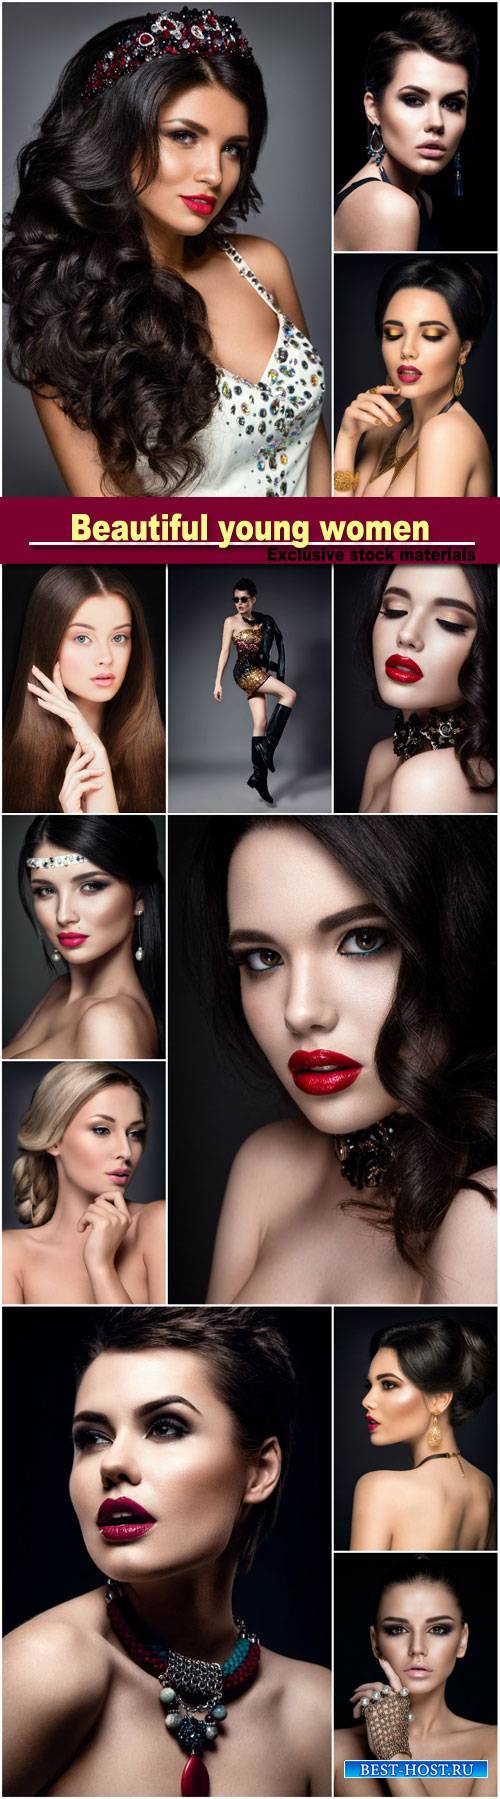 Beautiful young women, stylish make-up, hairstyles